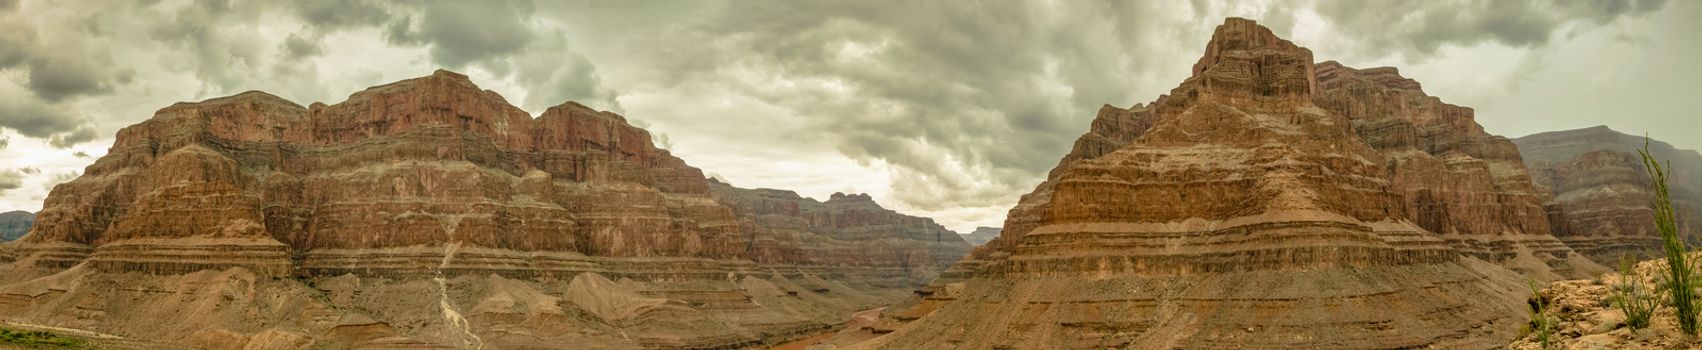 Grand Canyon Panorama USA, Nevada beautiful landscape 2013